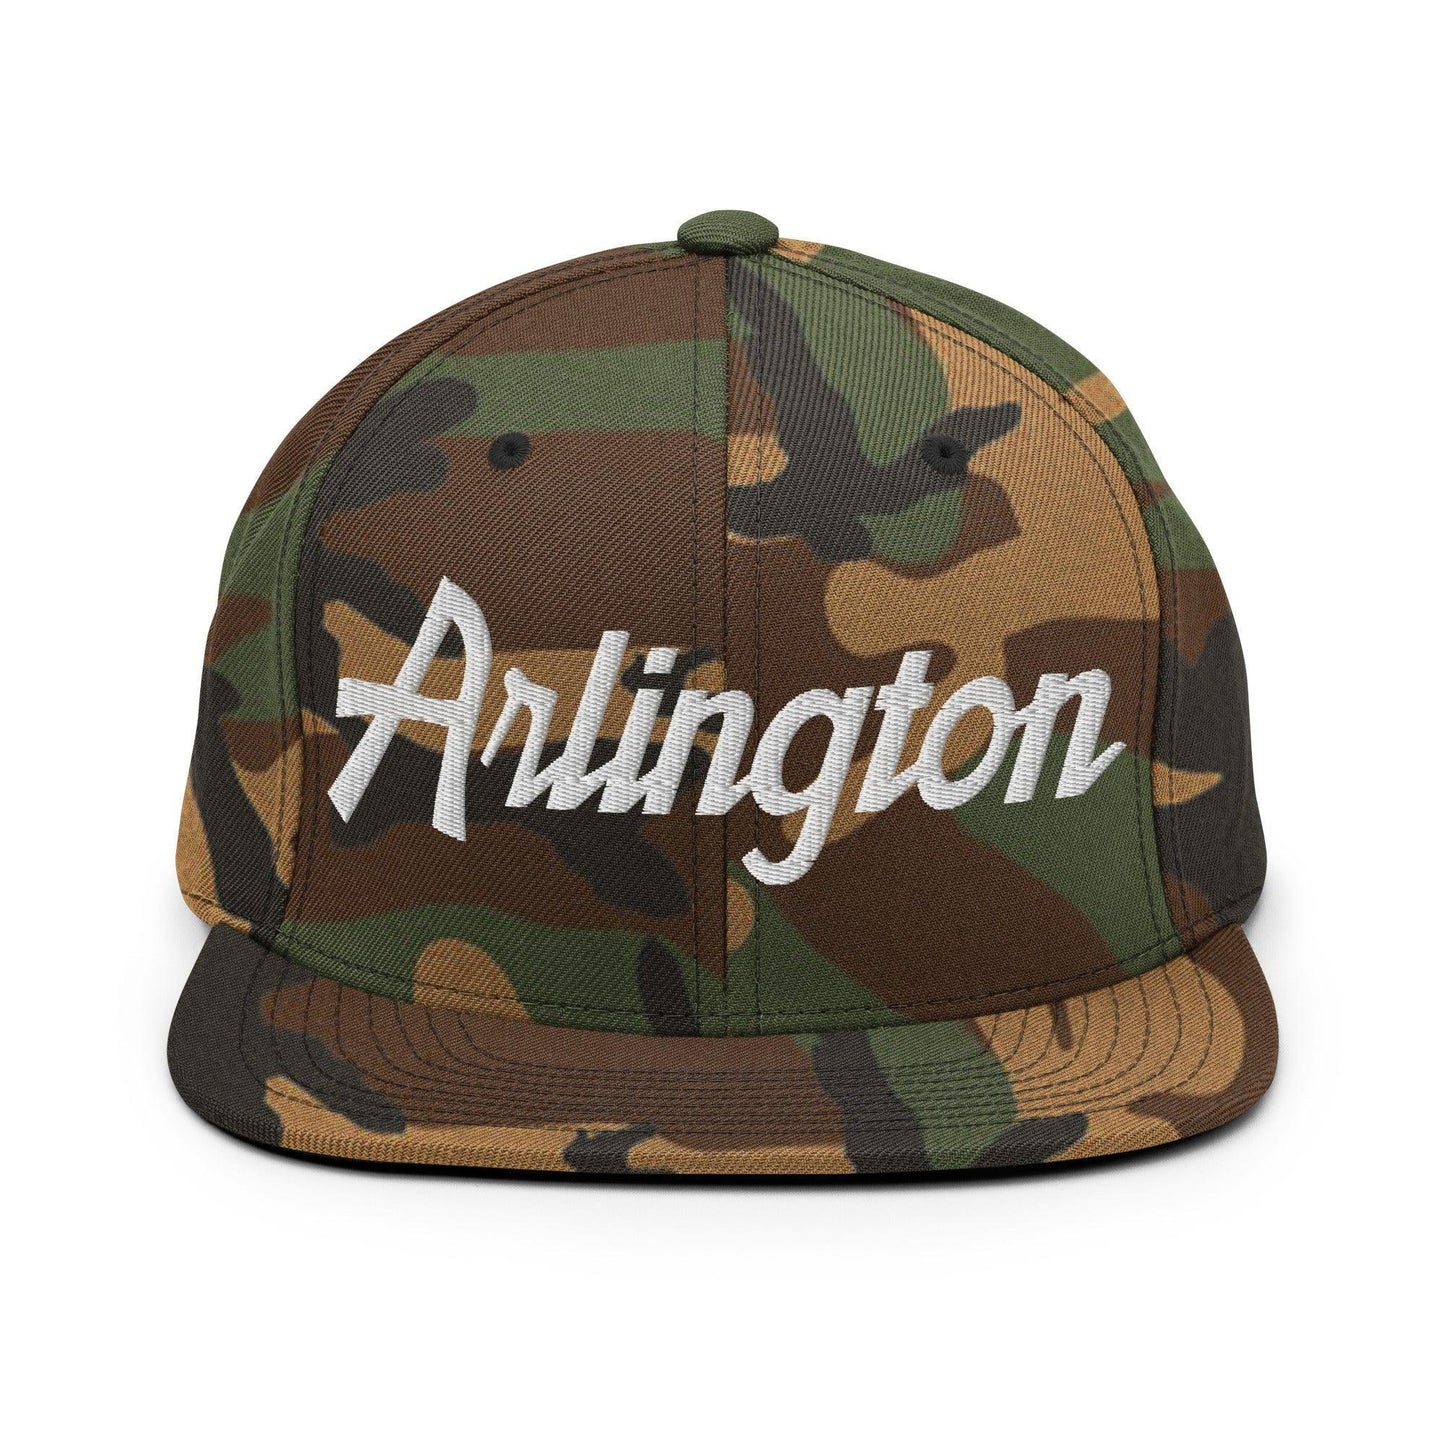 Arlington Script Snapback Hat Green Camo